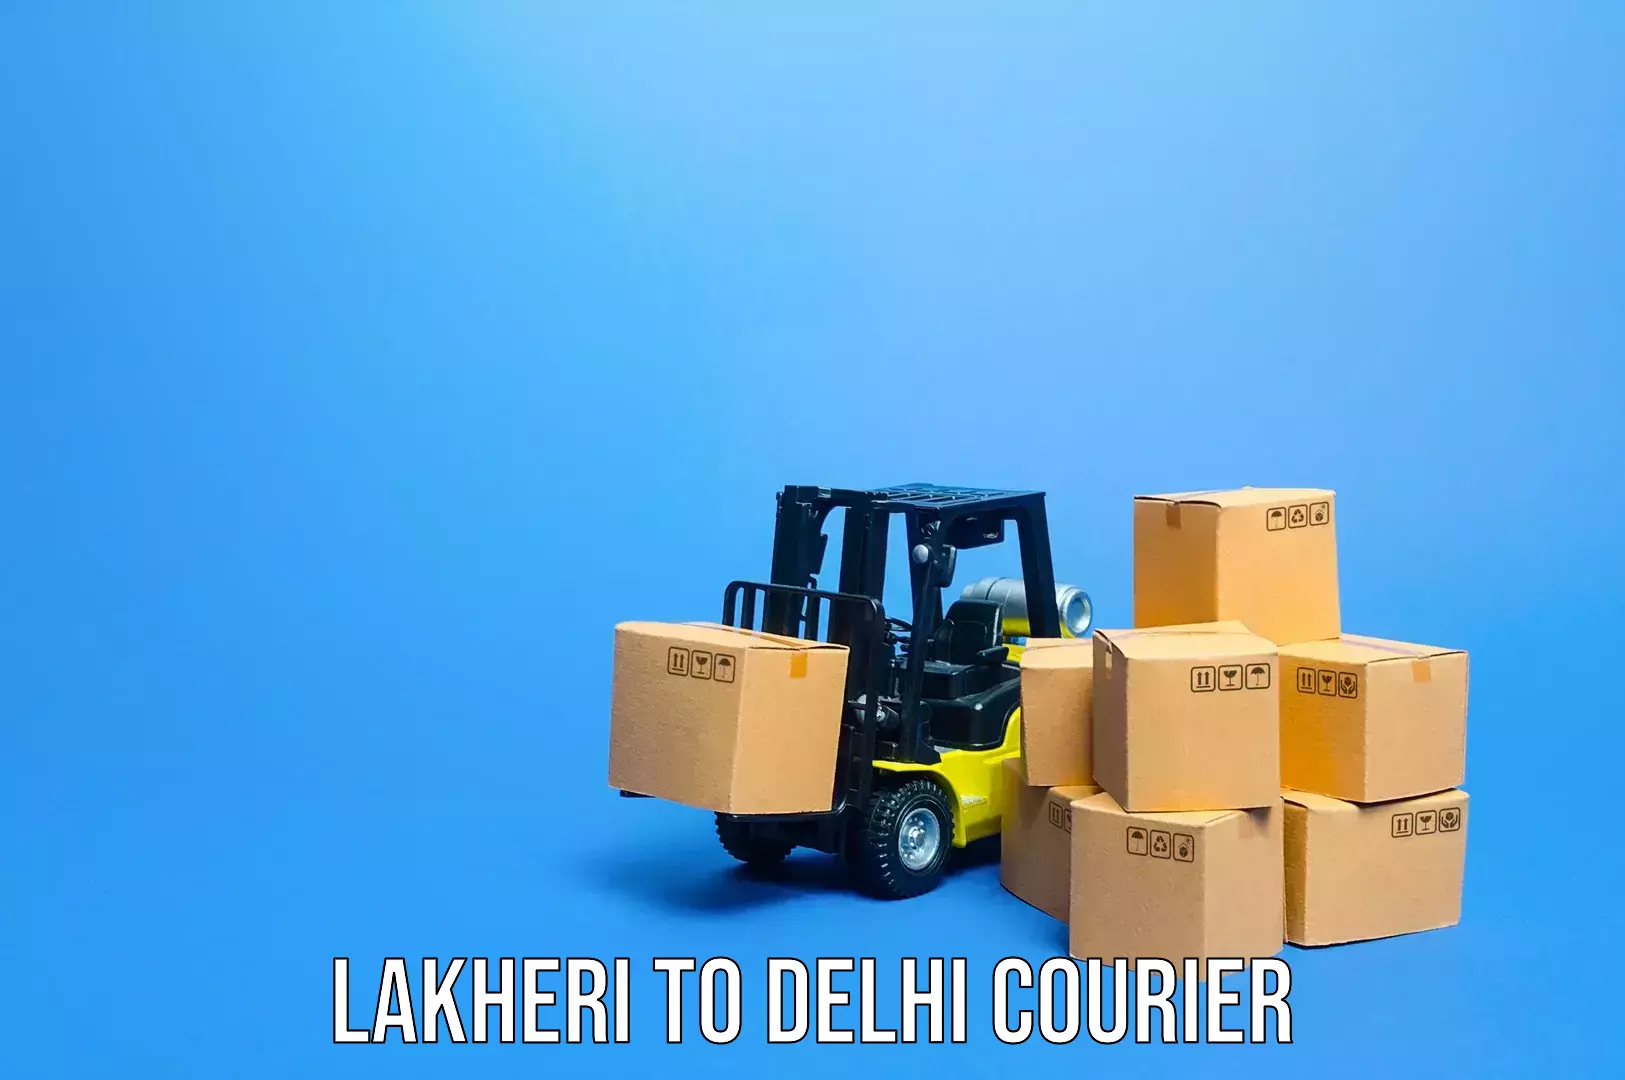 Personalized luggage shipping Lakheri to Indraprastha